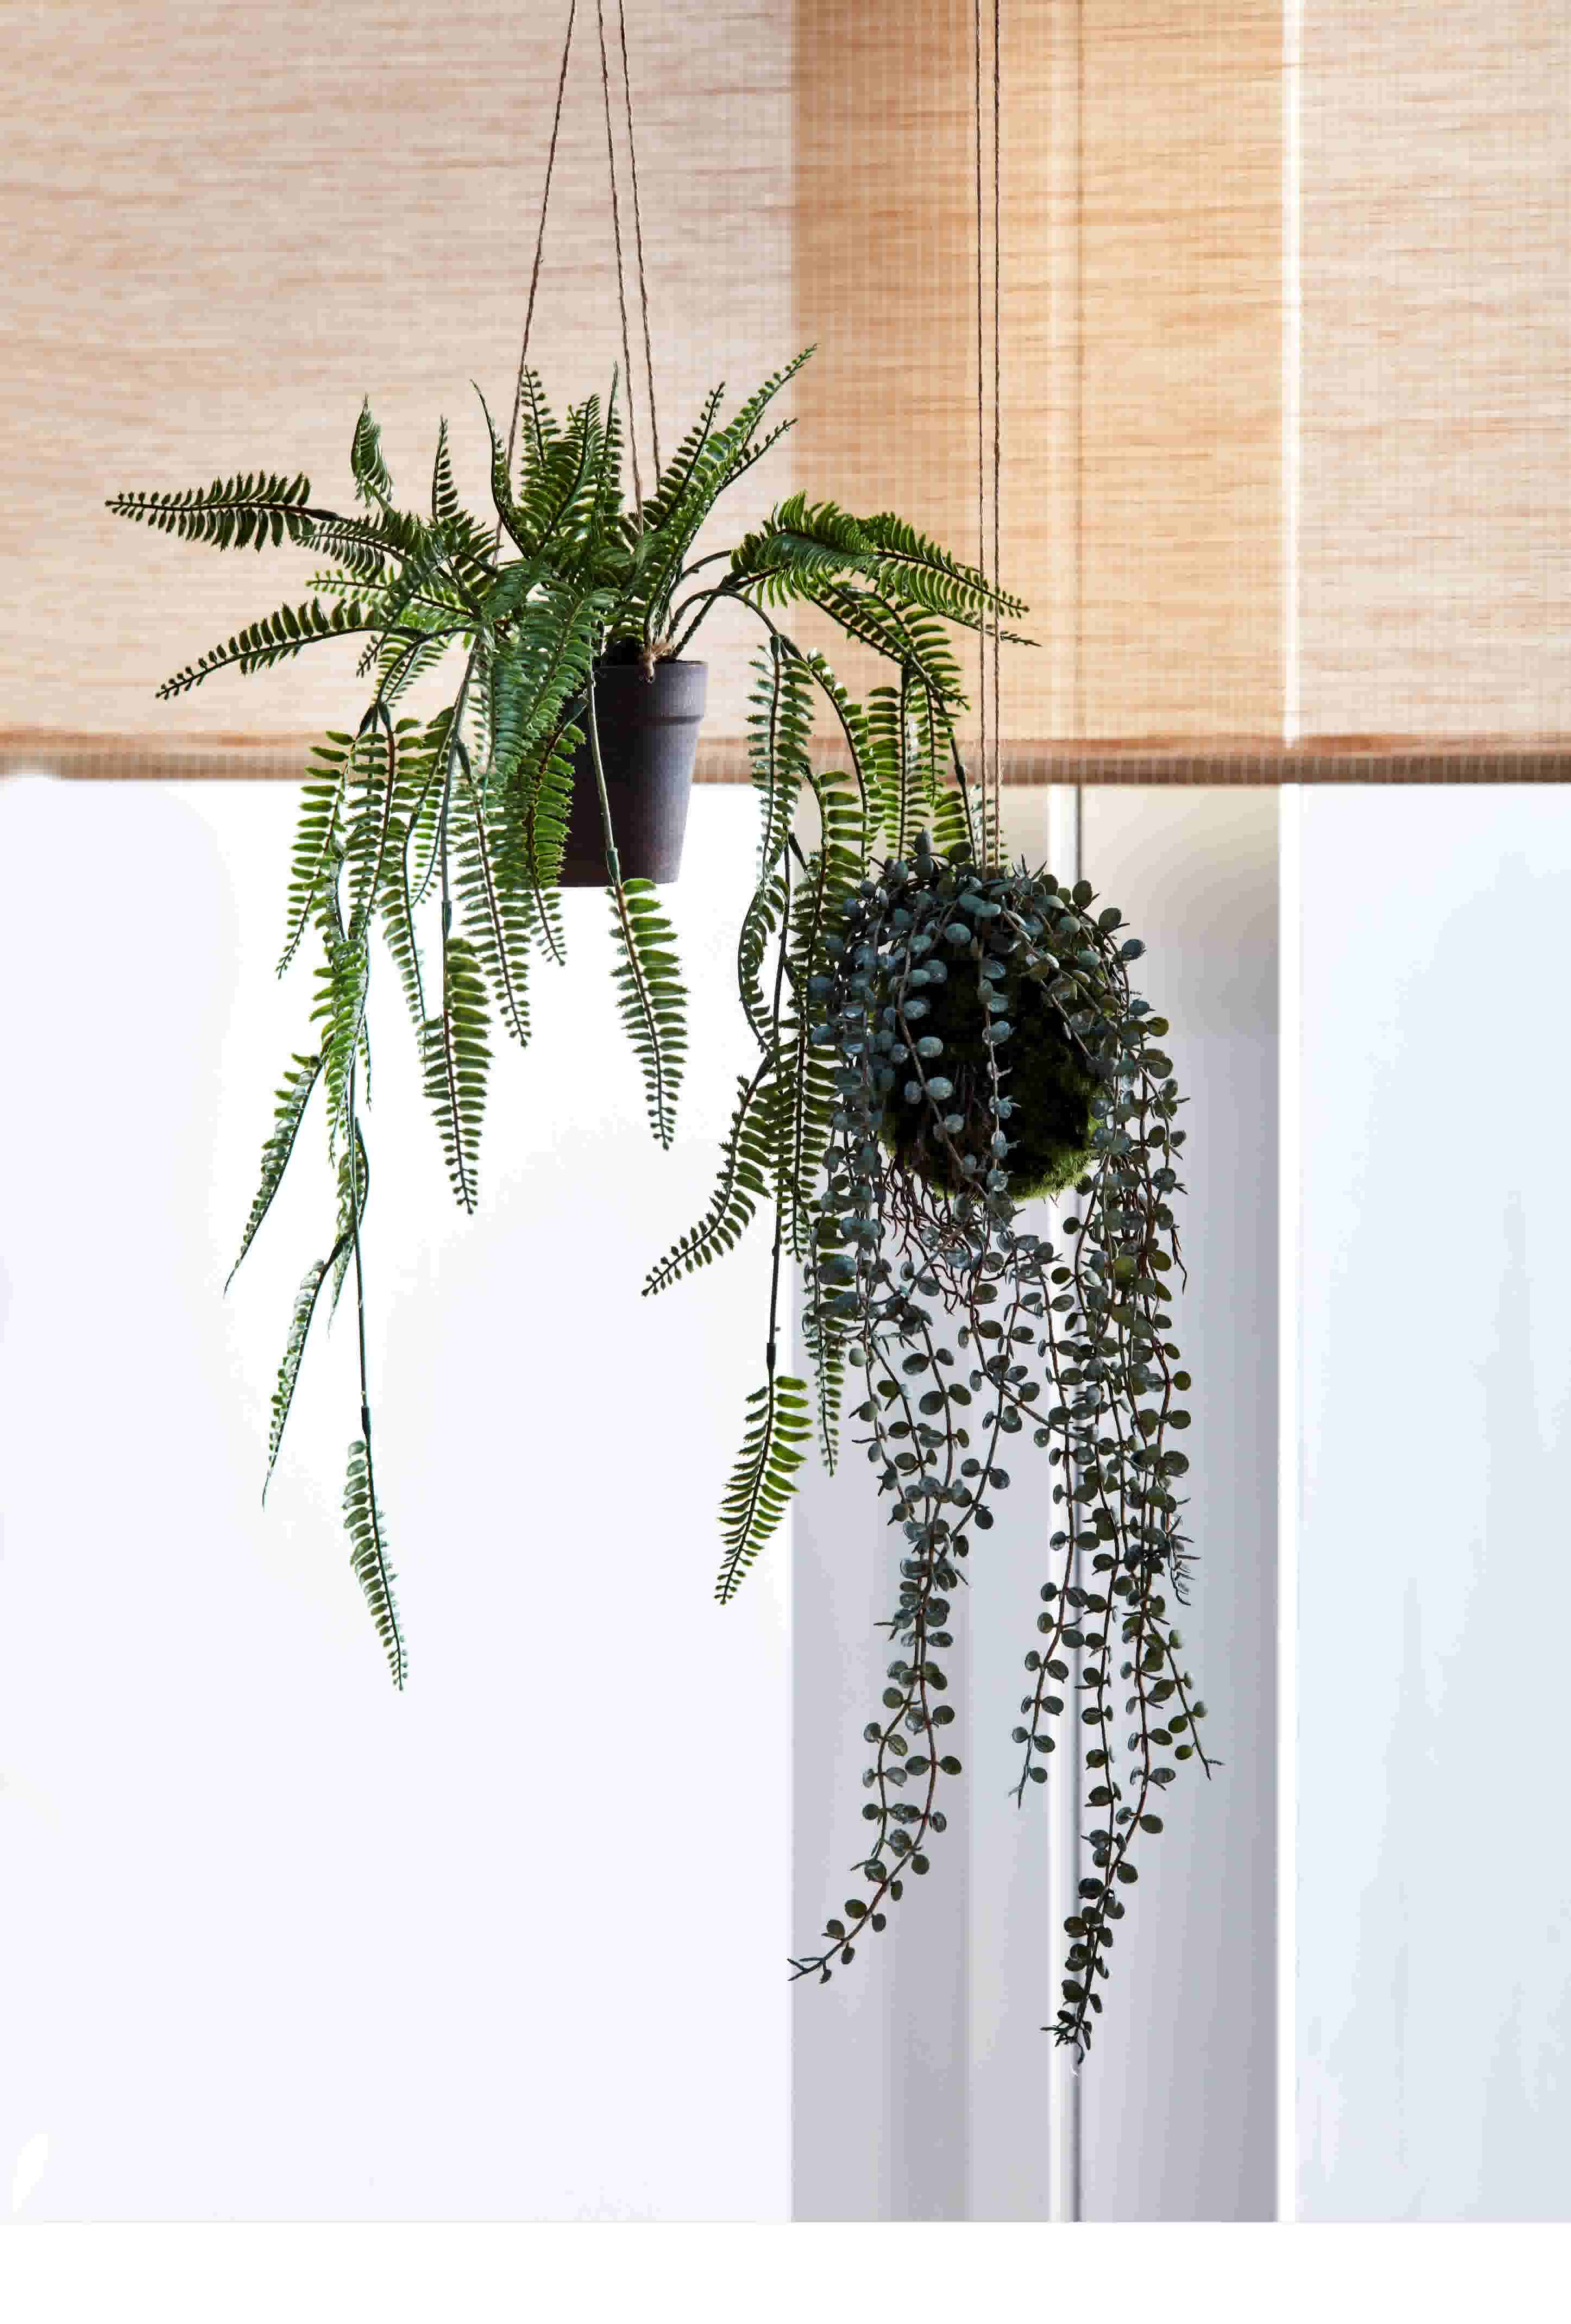 Bereid Beroep Schrikken Groen in huis: woonkamer stylen met kamerplanten | Karwei